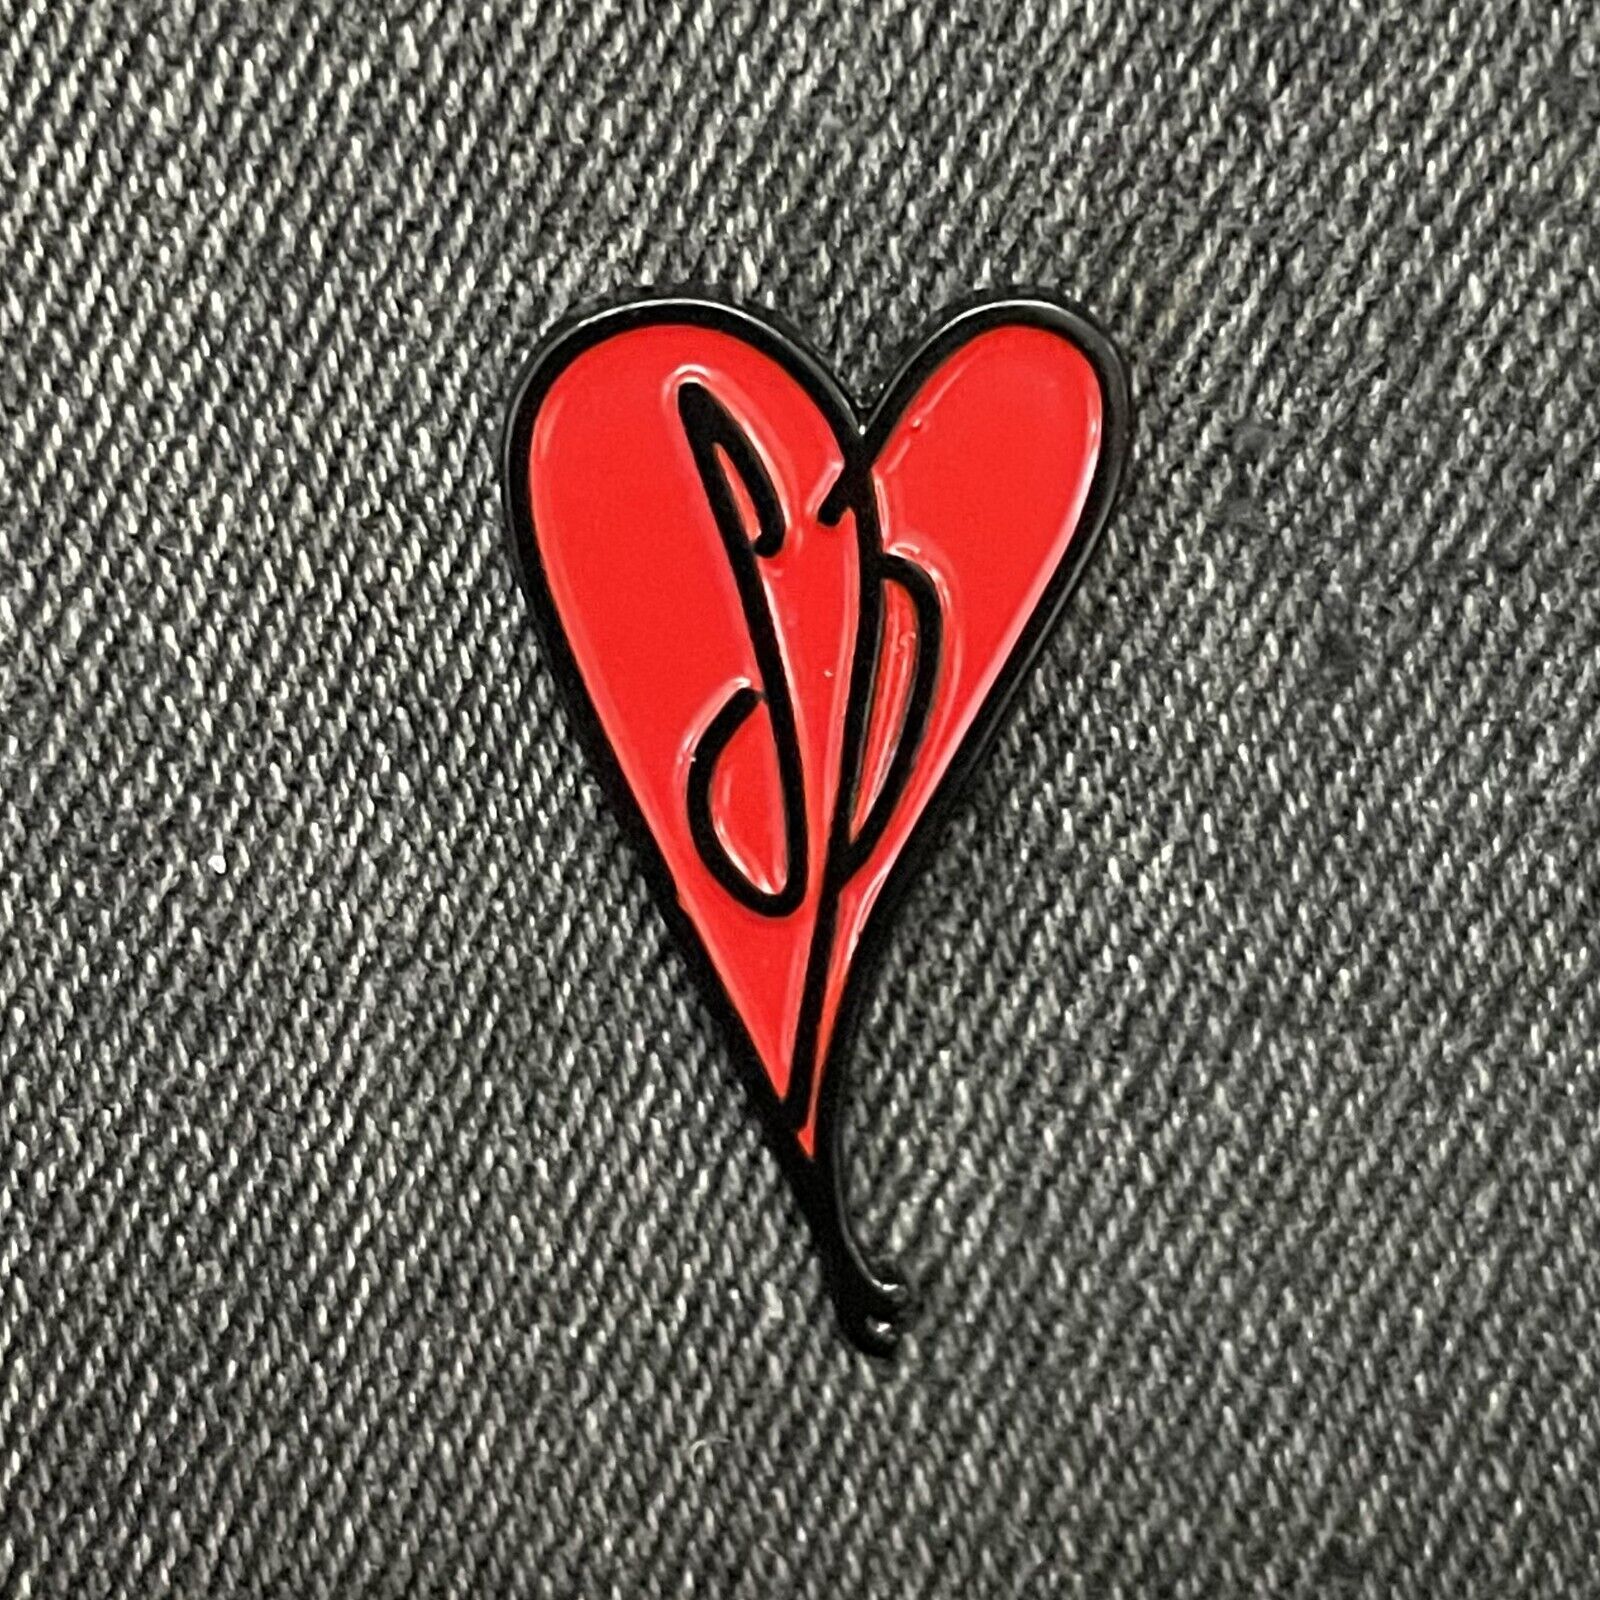 Smashing Pumpkins - Heart (RED) - Enamel Pin